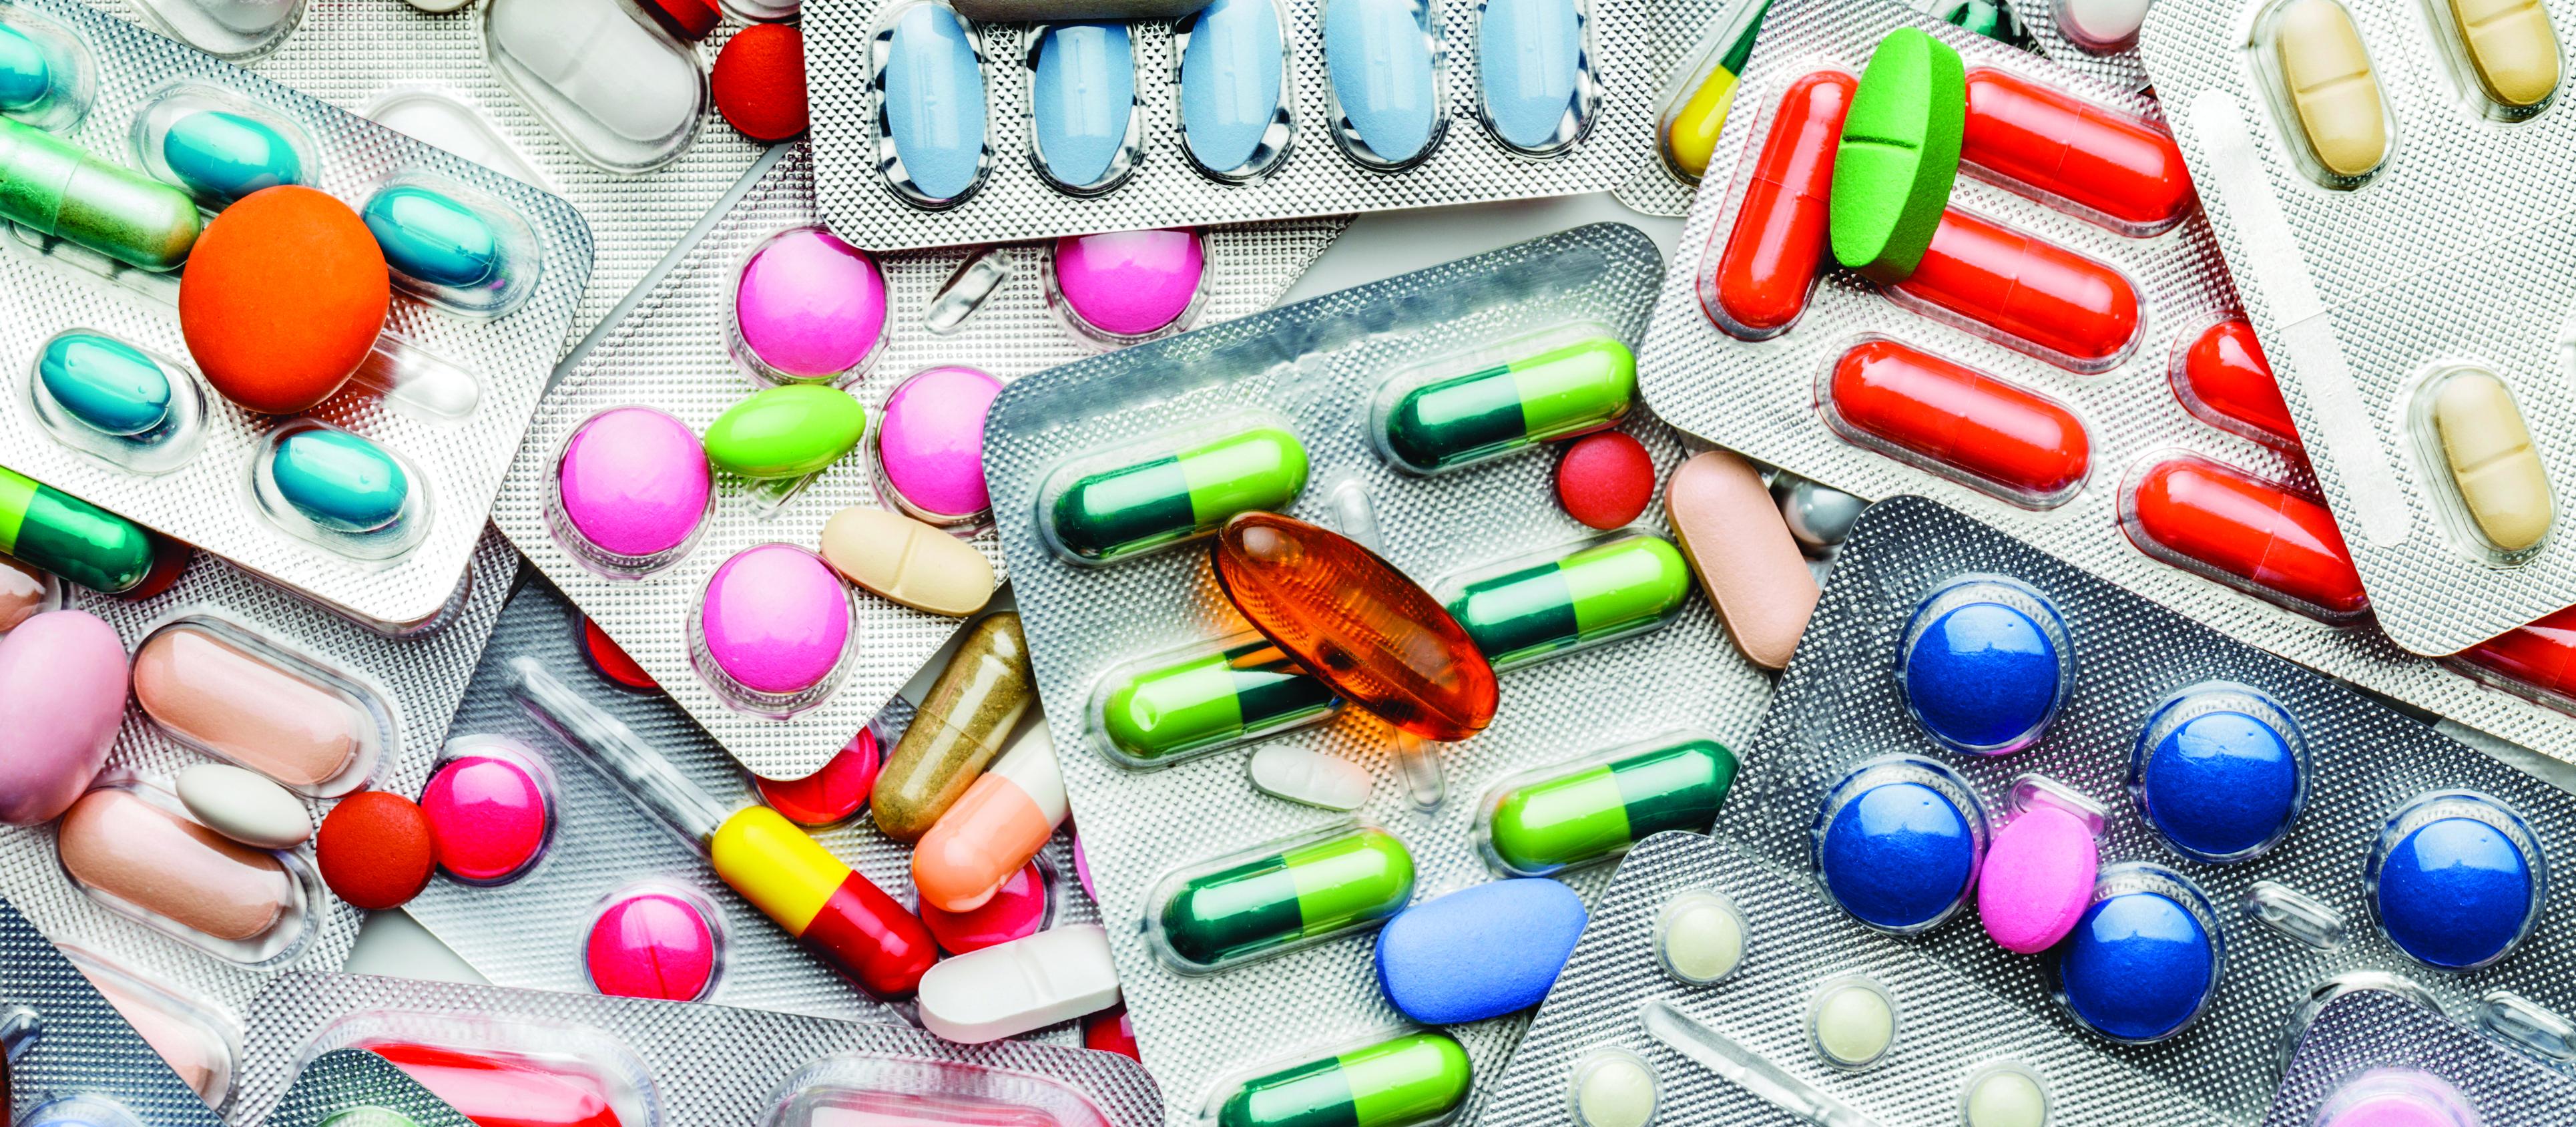 Pills, medications, tablets